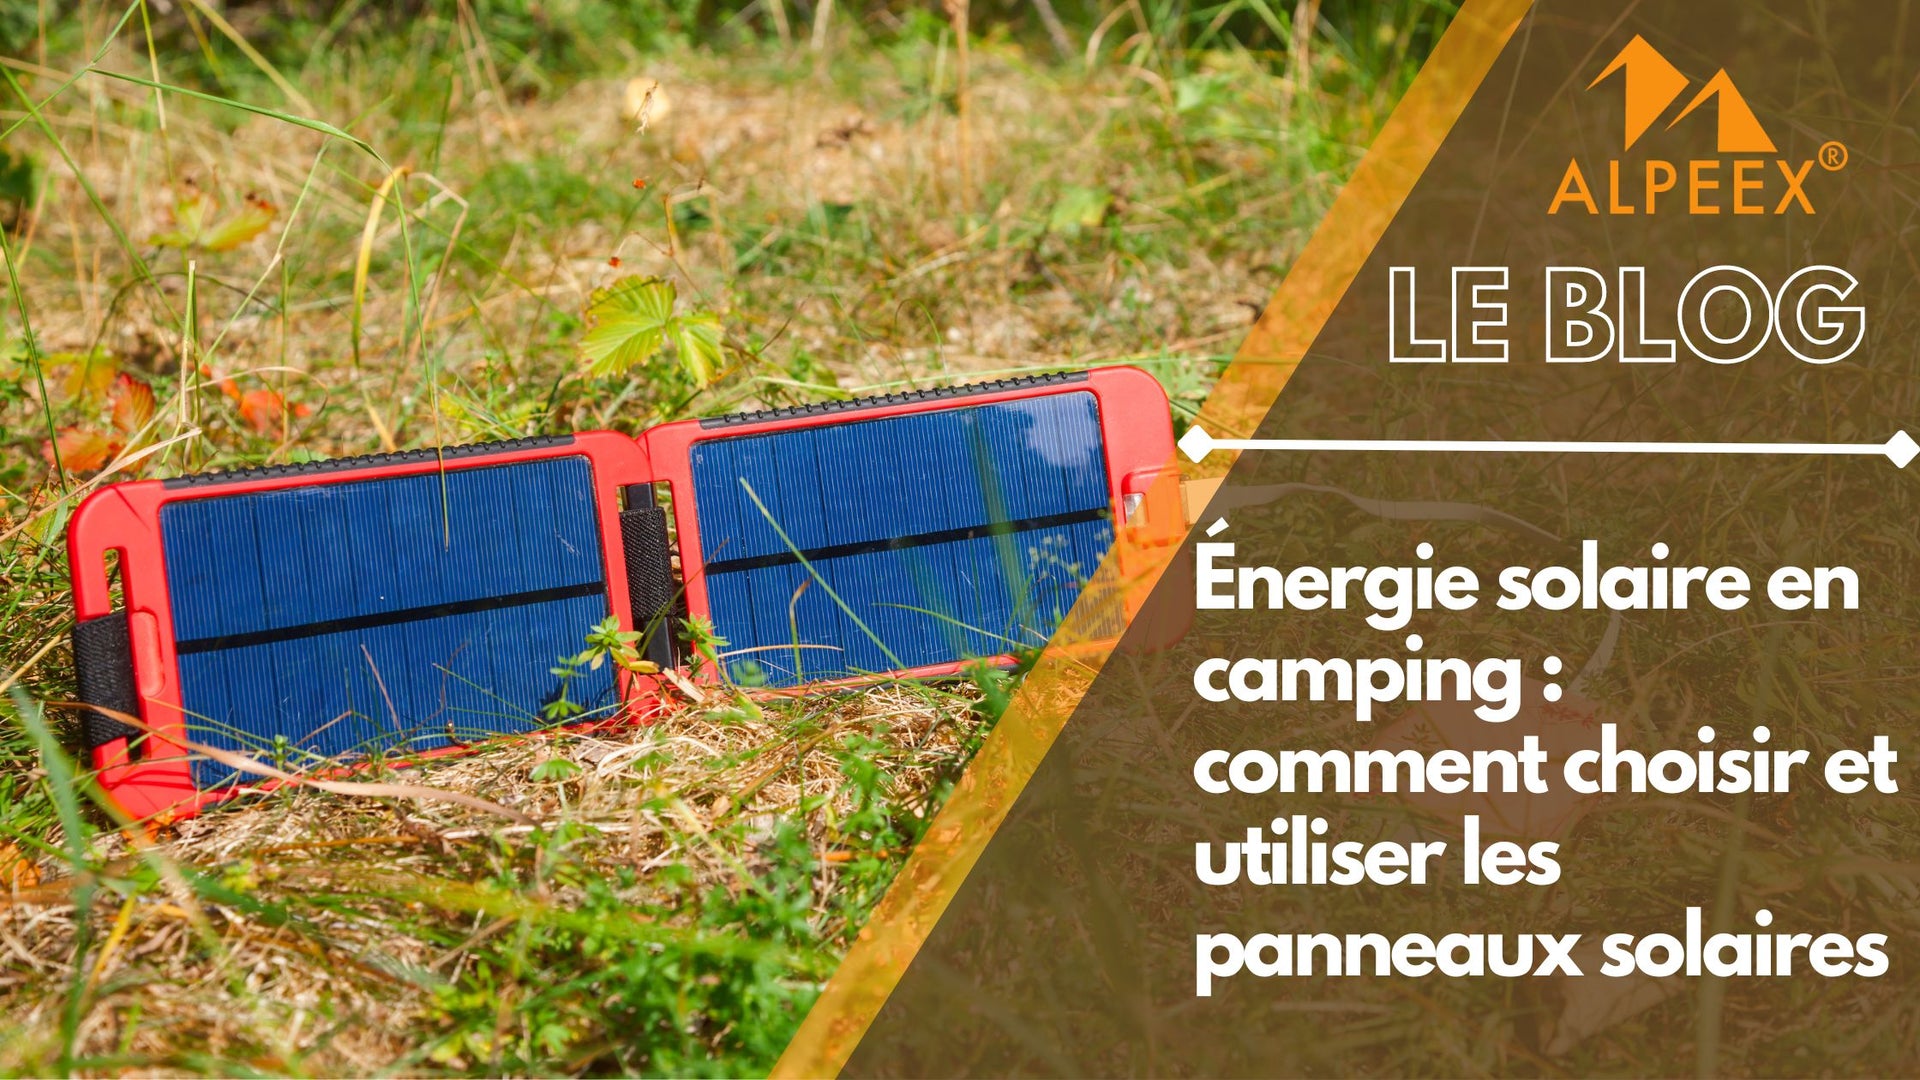 Panneau solaire portable poser dans l'herbe pour le camping